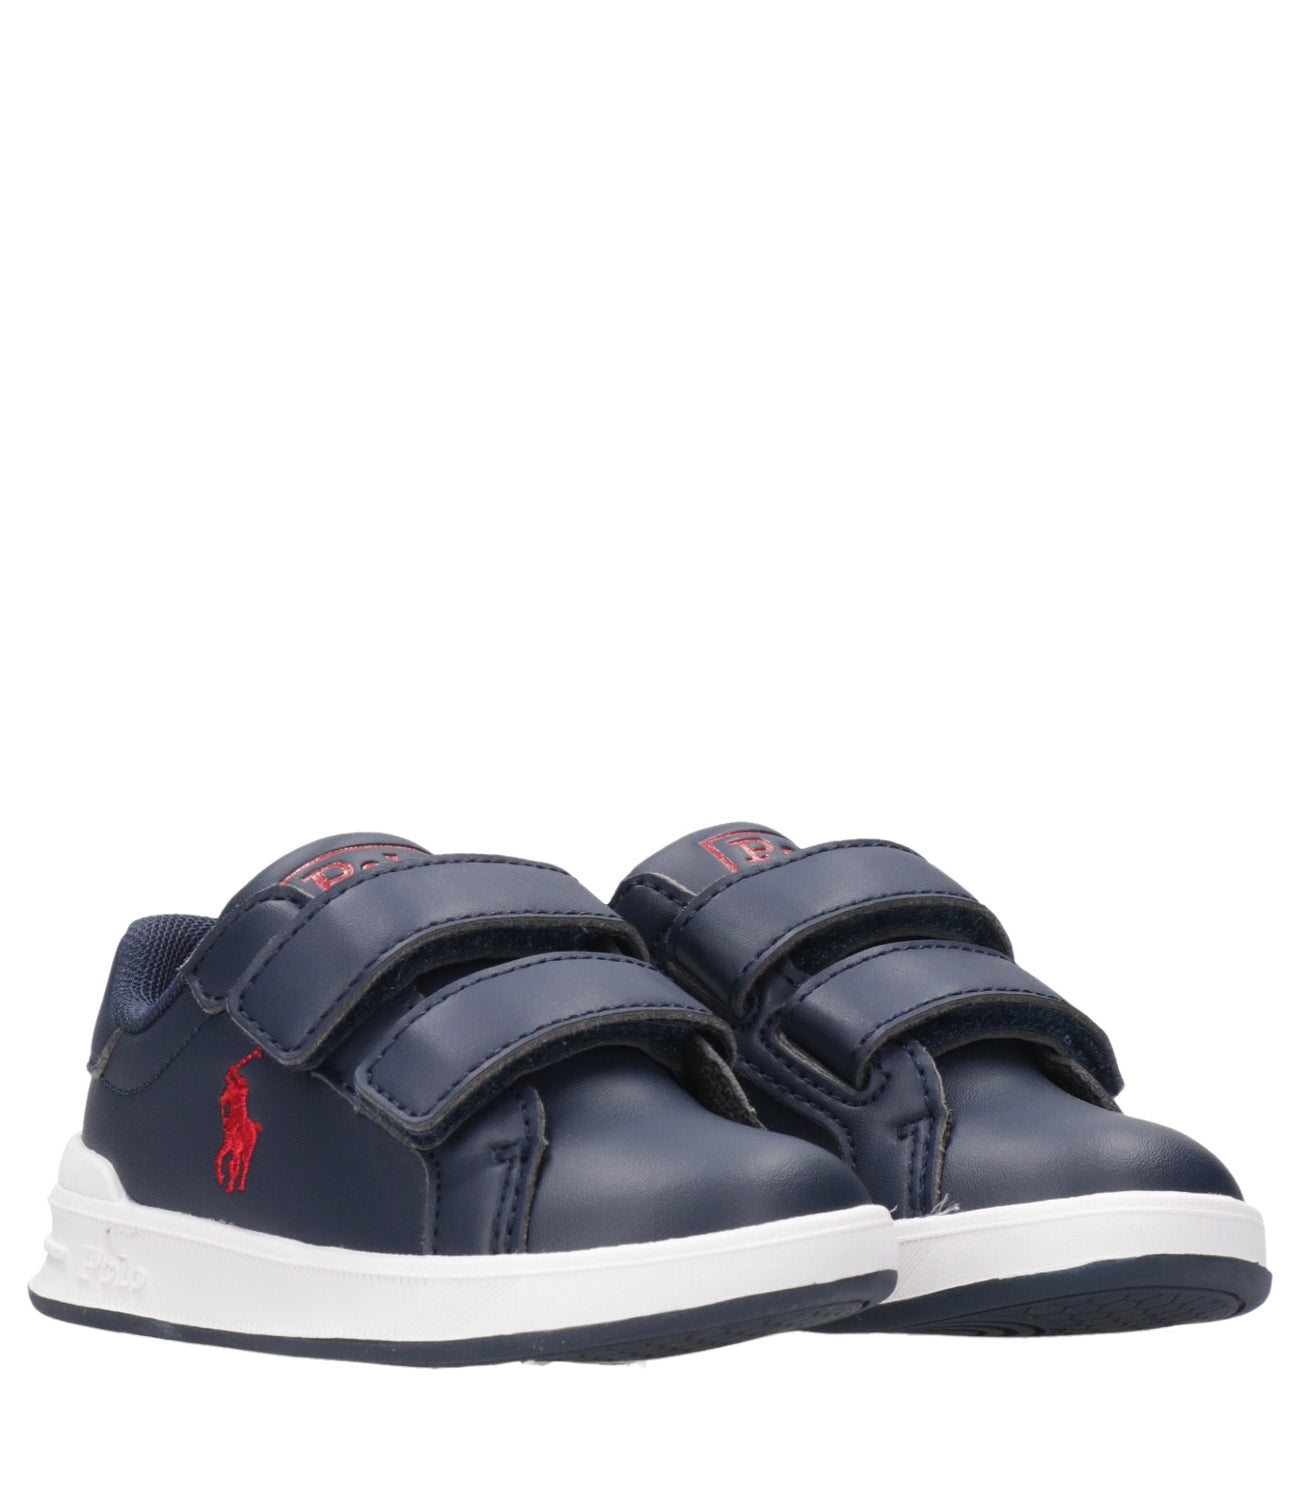 Ralph Lauren Childrenswear | Heritage Court II EZ Sneakers Navy Blue and Red